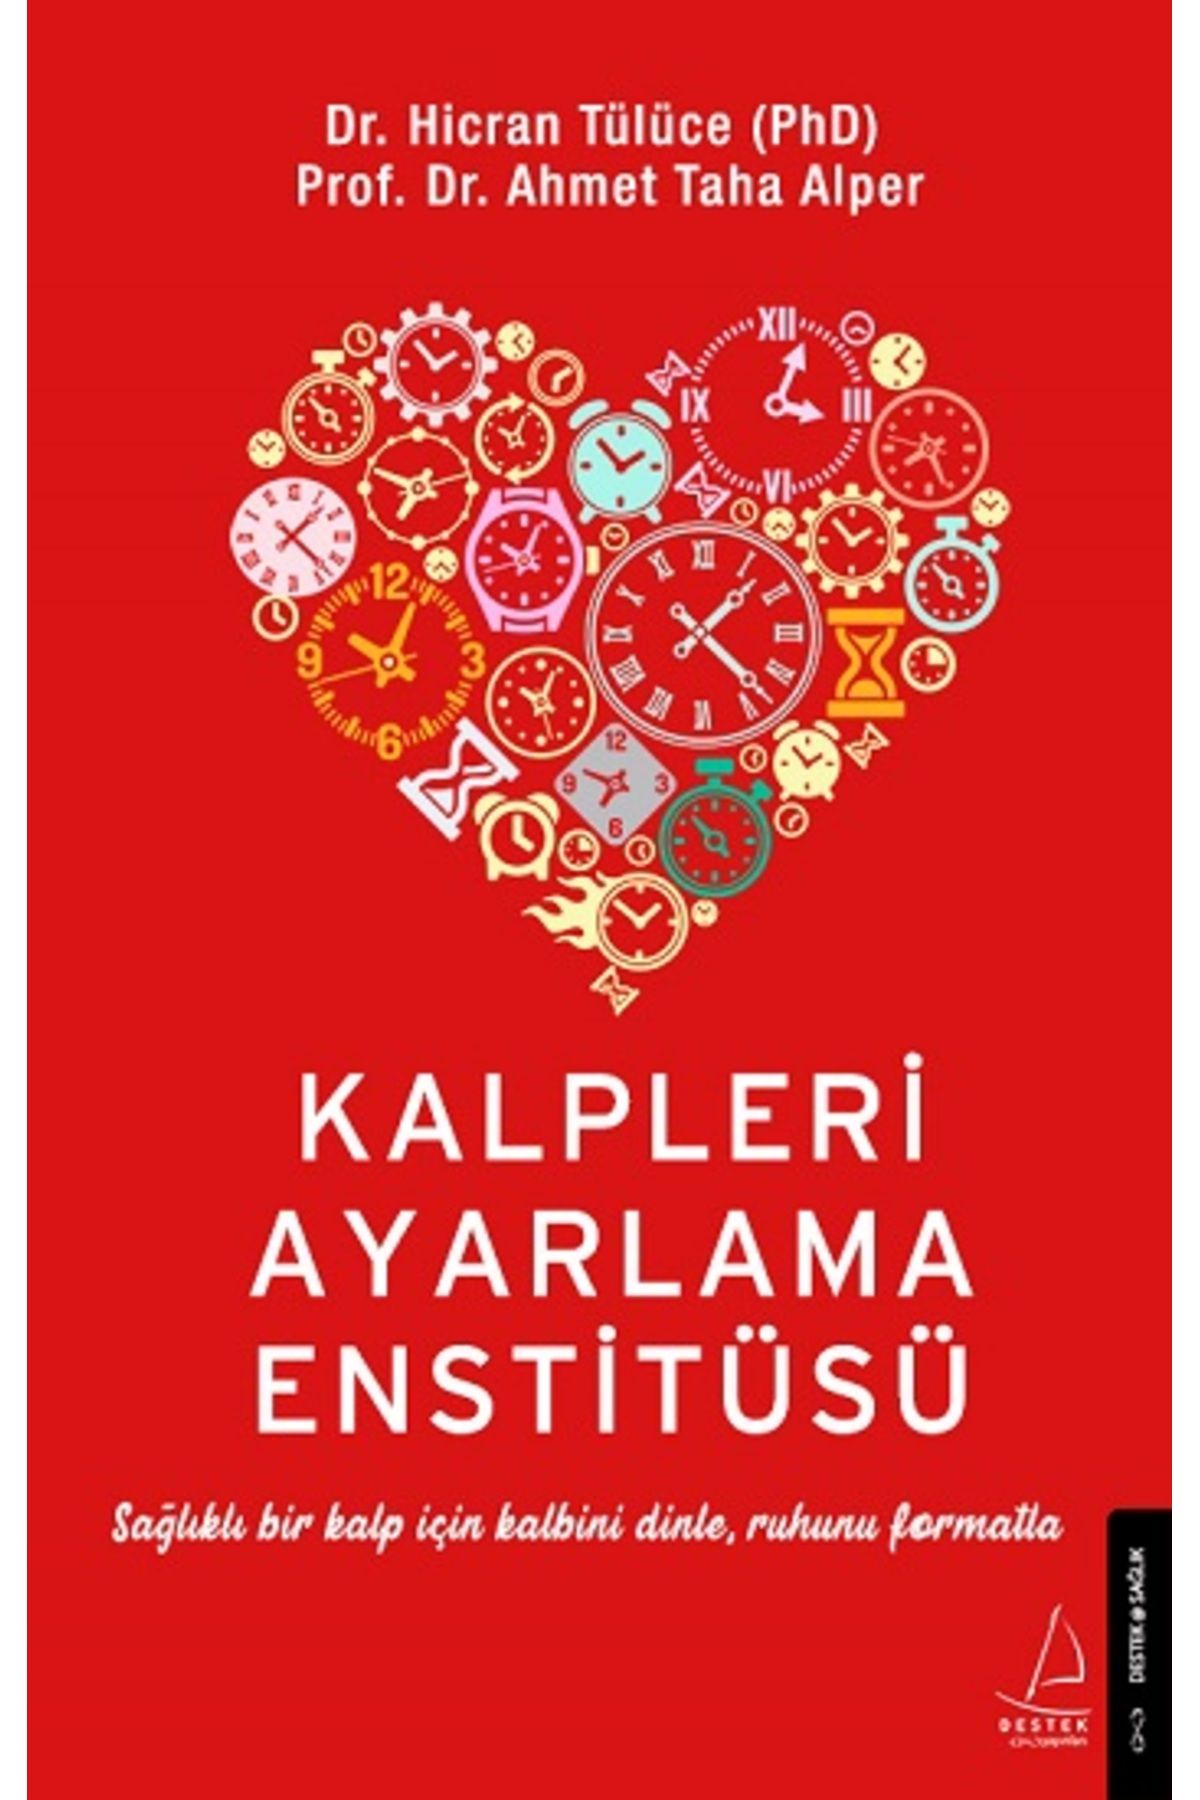 Destek Yayınları Kalpleri Ayarlama Enstitüsü kitabı - Hicran Tülüce & Ahmet Taha Alper - Destek Yayınları